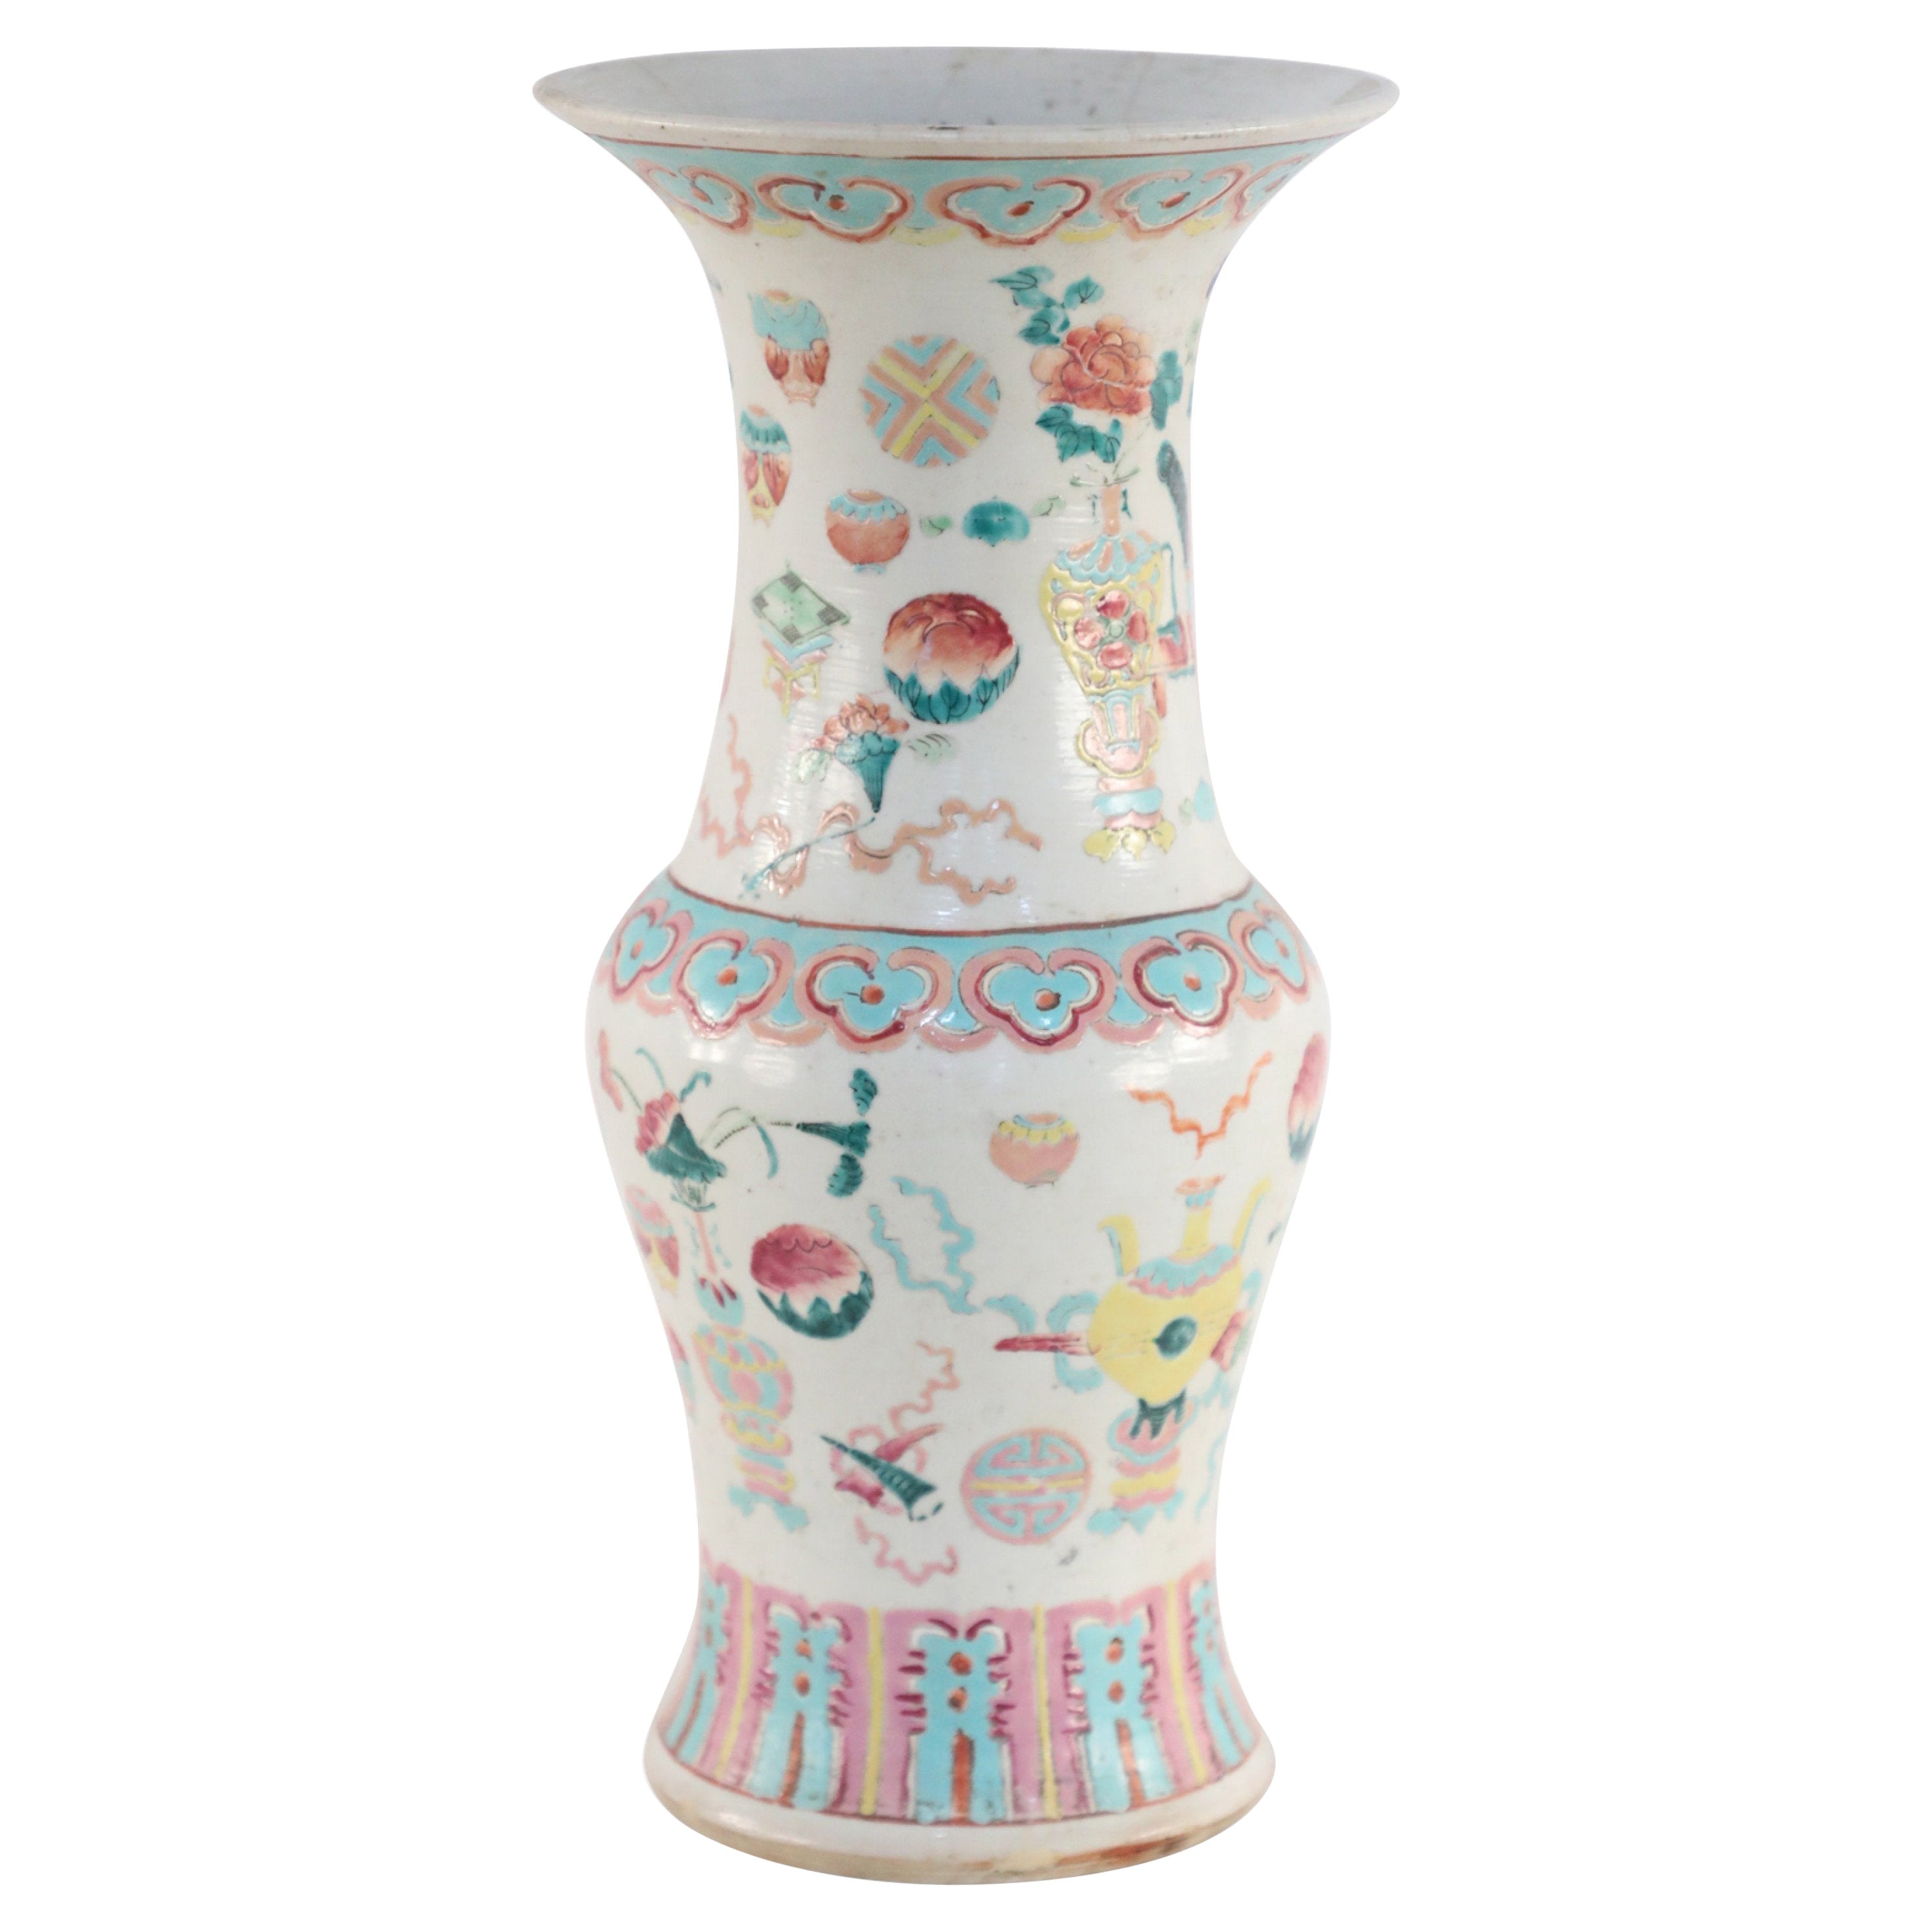 Chinesische Porzellanurne mit weißem und rosa, blauem und gelbem Bogu-Muster